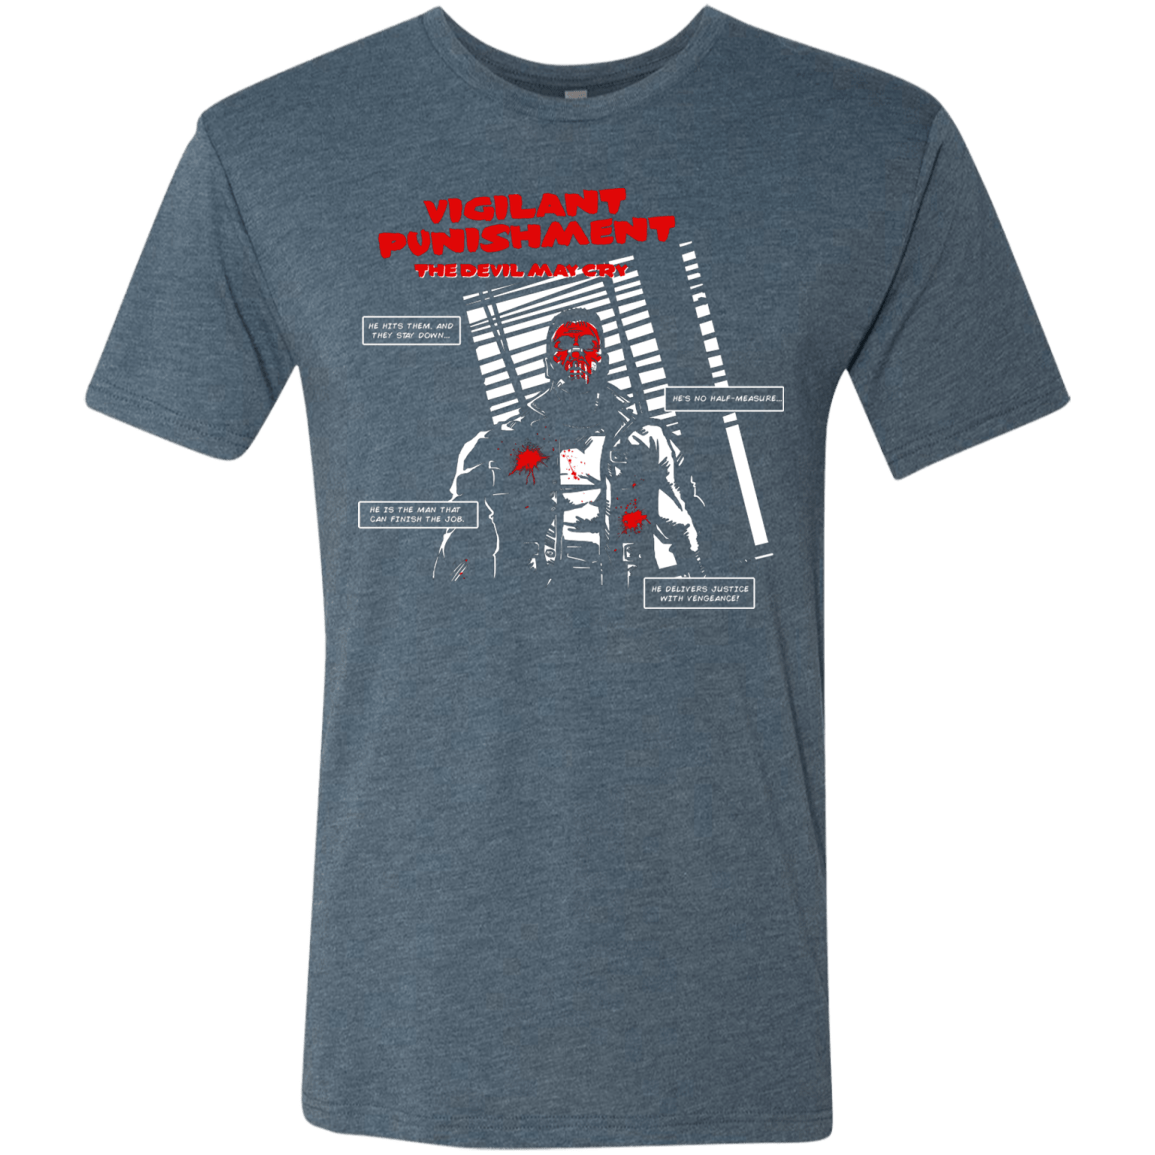 T-Shirts Indigo / S Vigilant Men's Triblend T-Shirt